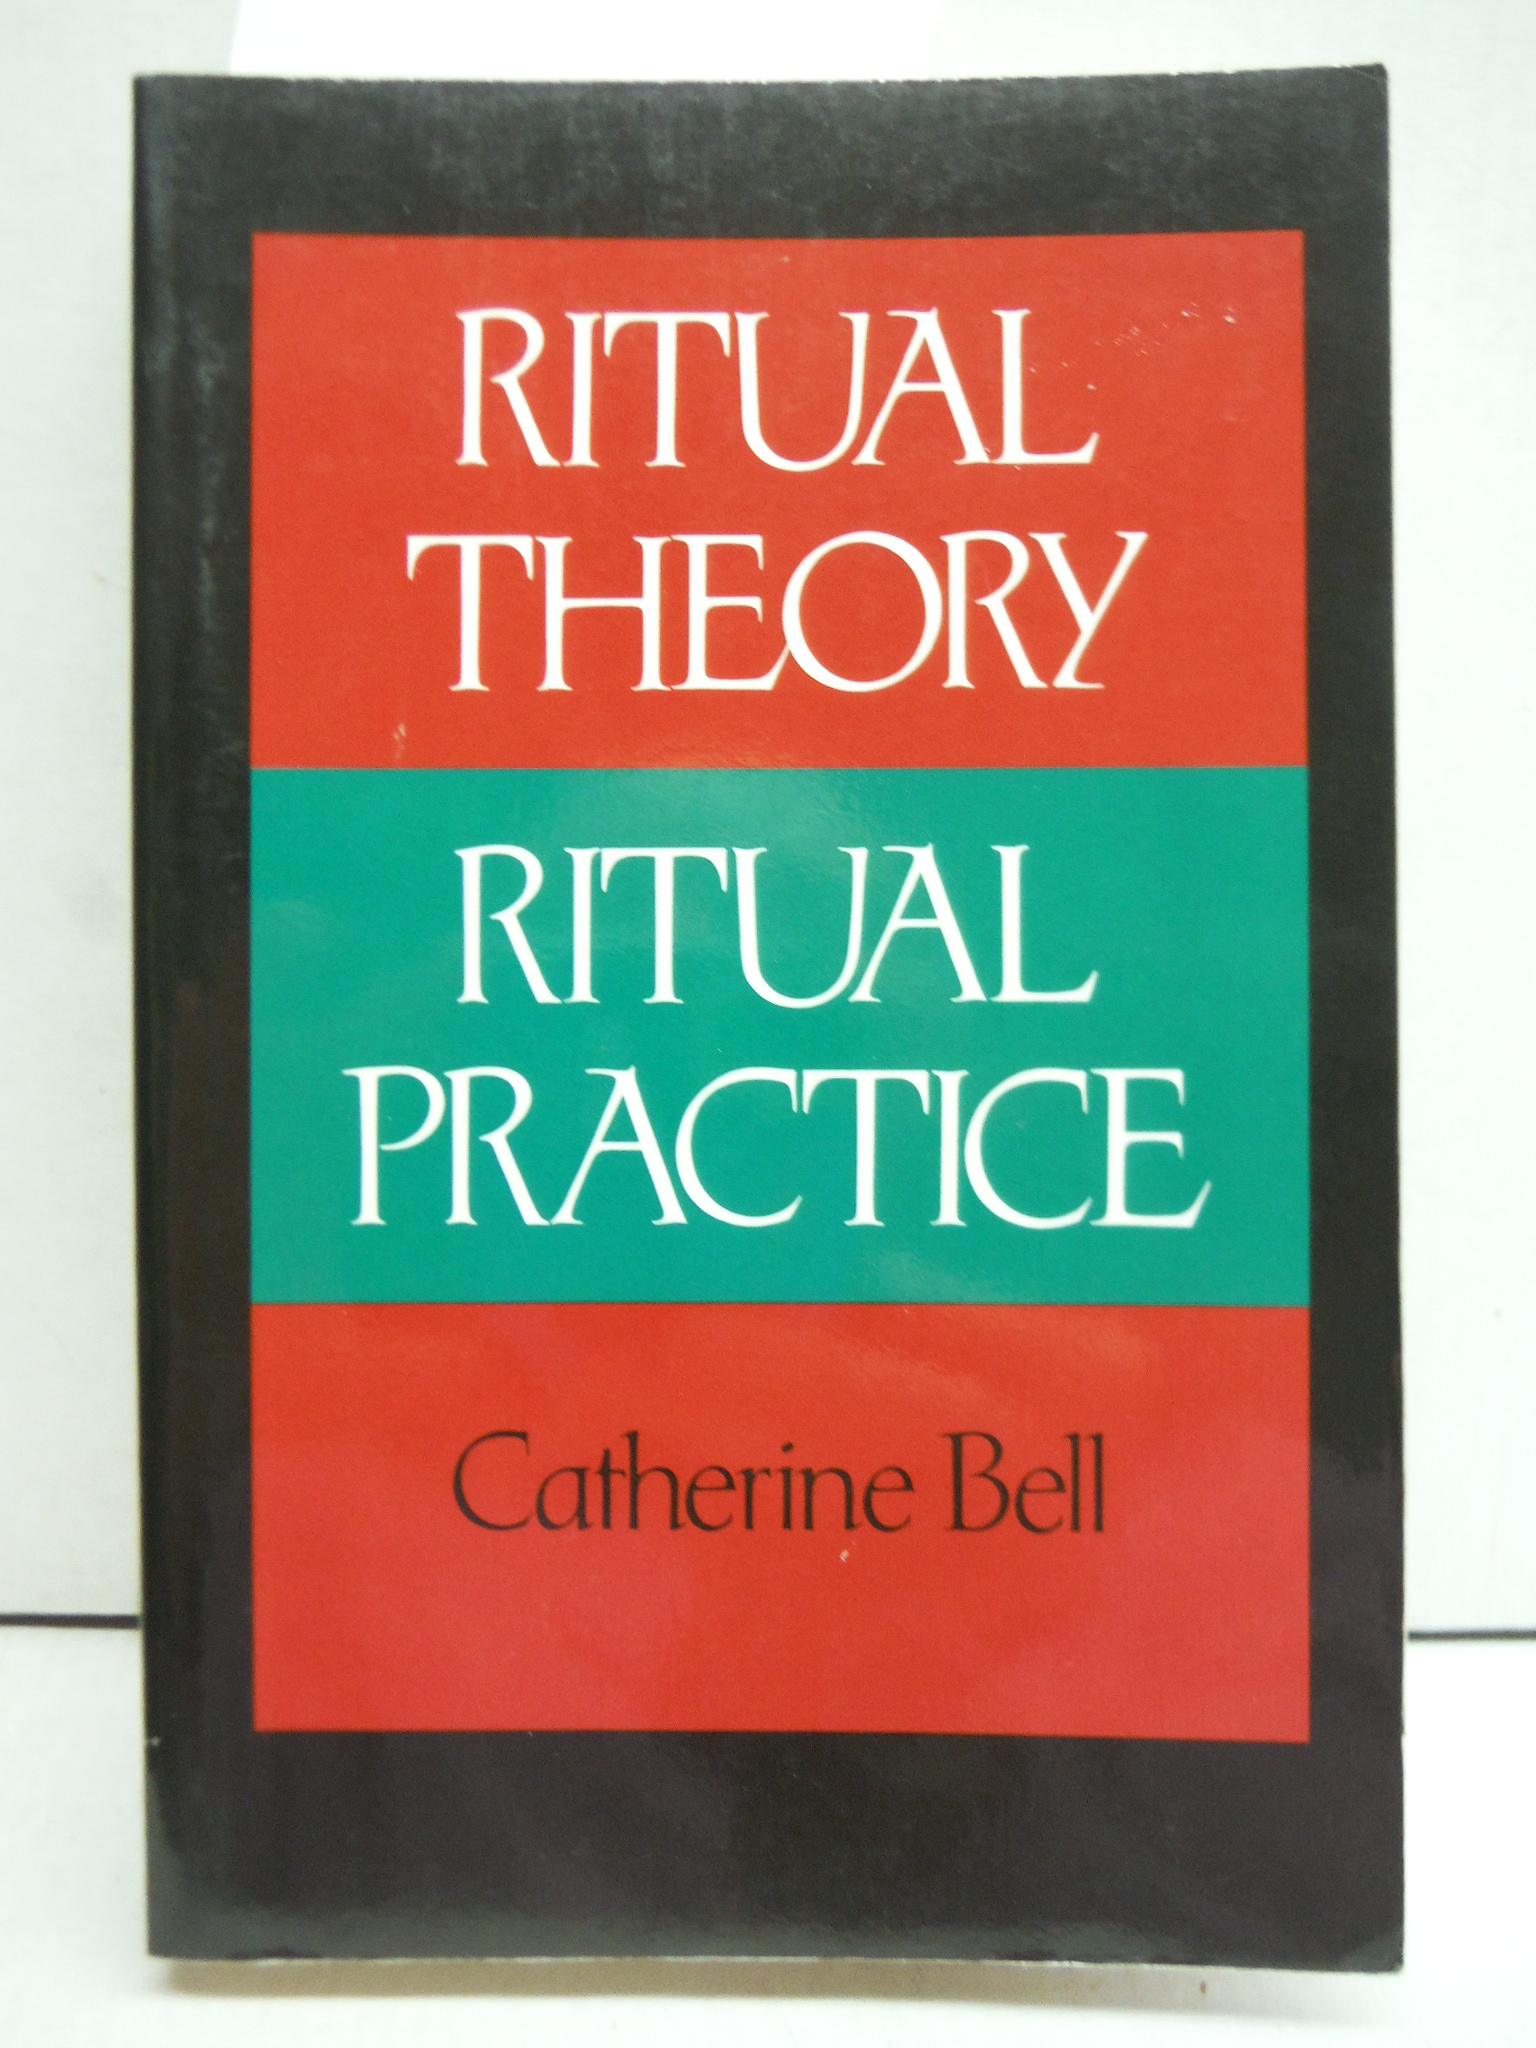 Ritual Theory, Ritual Practice